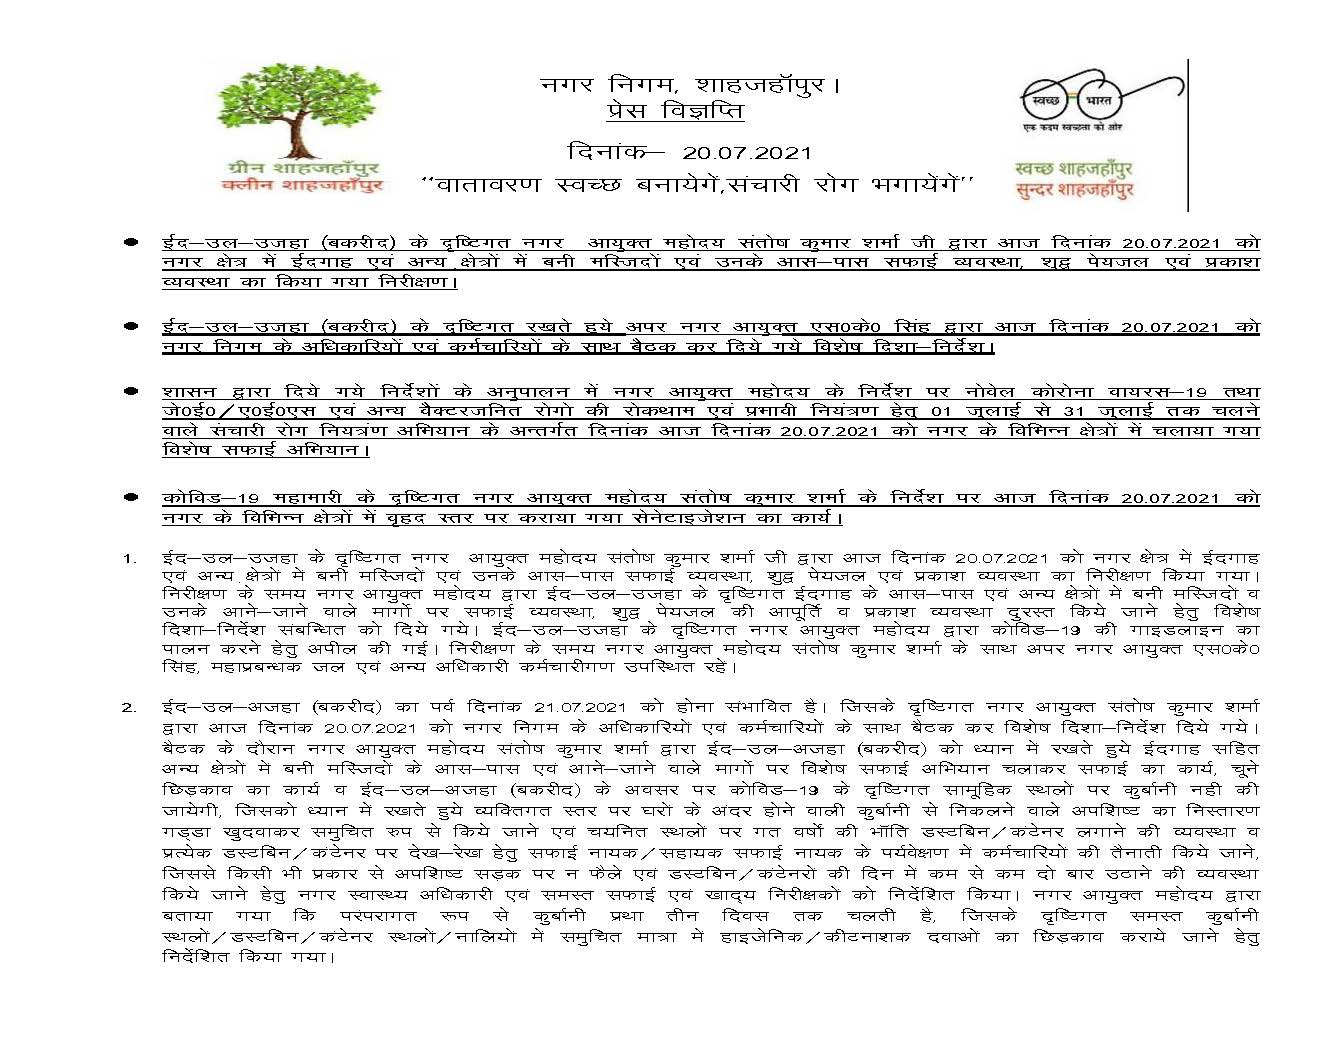 news 20-07-2021 – बकरीद के दृष्टिगत नगर आयुक्त महोदय द्वारा शहर में सफाई व्यवस्था, पेयजल व प्रकाश व्यवस्था का किया गया निरीक्षण।